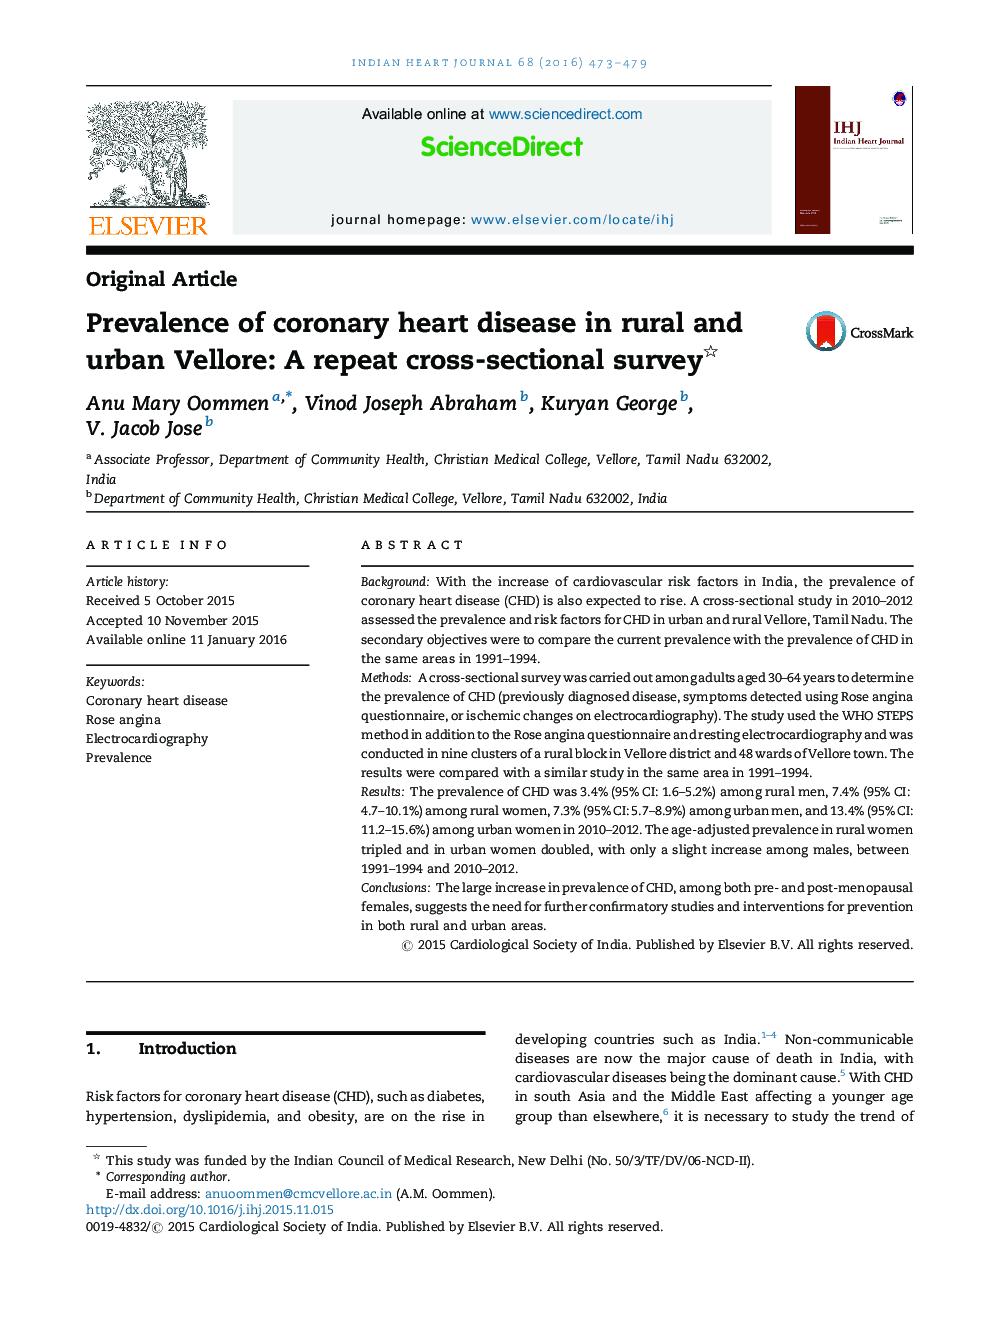 شیوع بیماری عروق کرونر قلب در Vellore شهری و روستایی: بررسی تکرار مقطعی